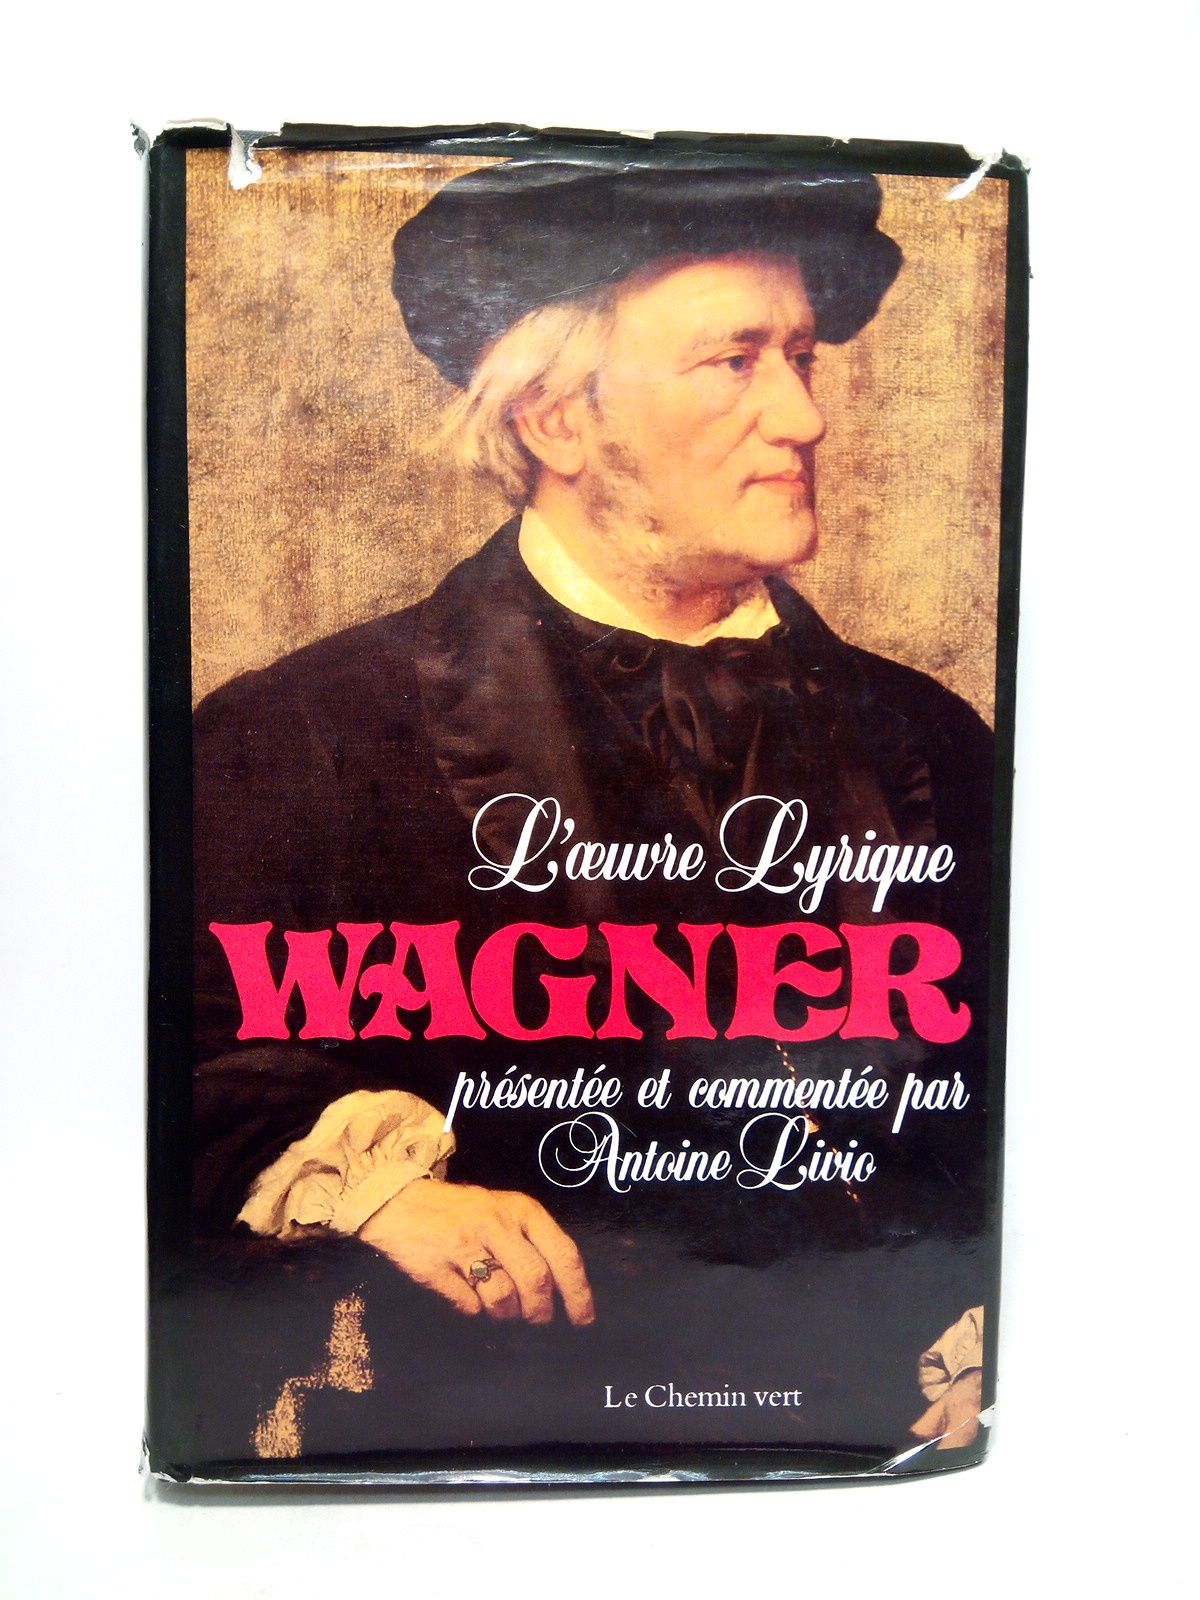 Richard Wagner. L'Oeuvre lyrique: L'Integrale des livrets d'opéras, la cène …